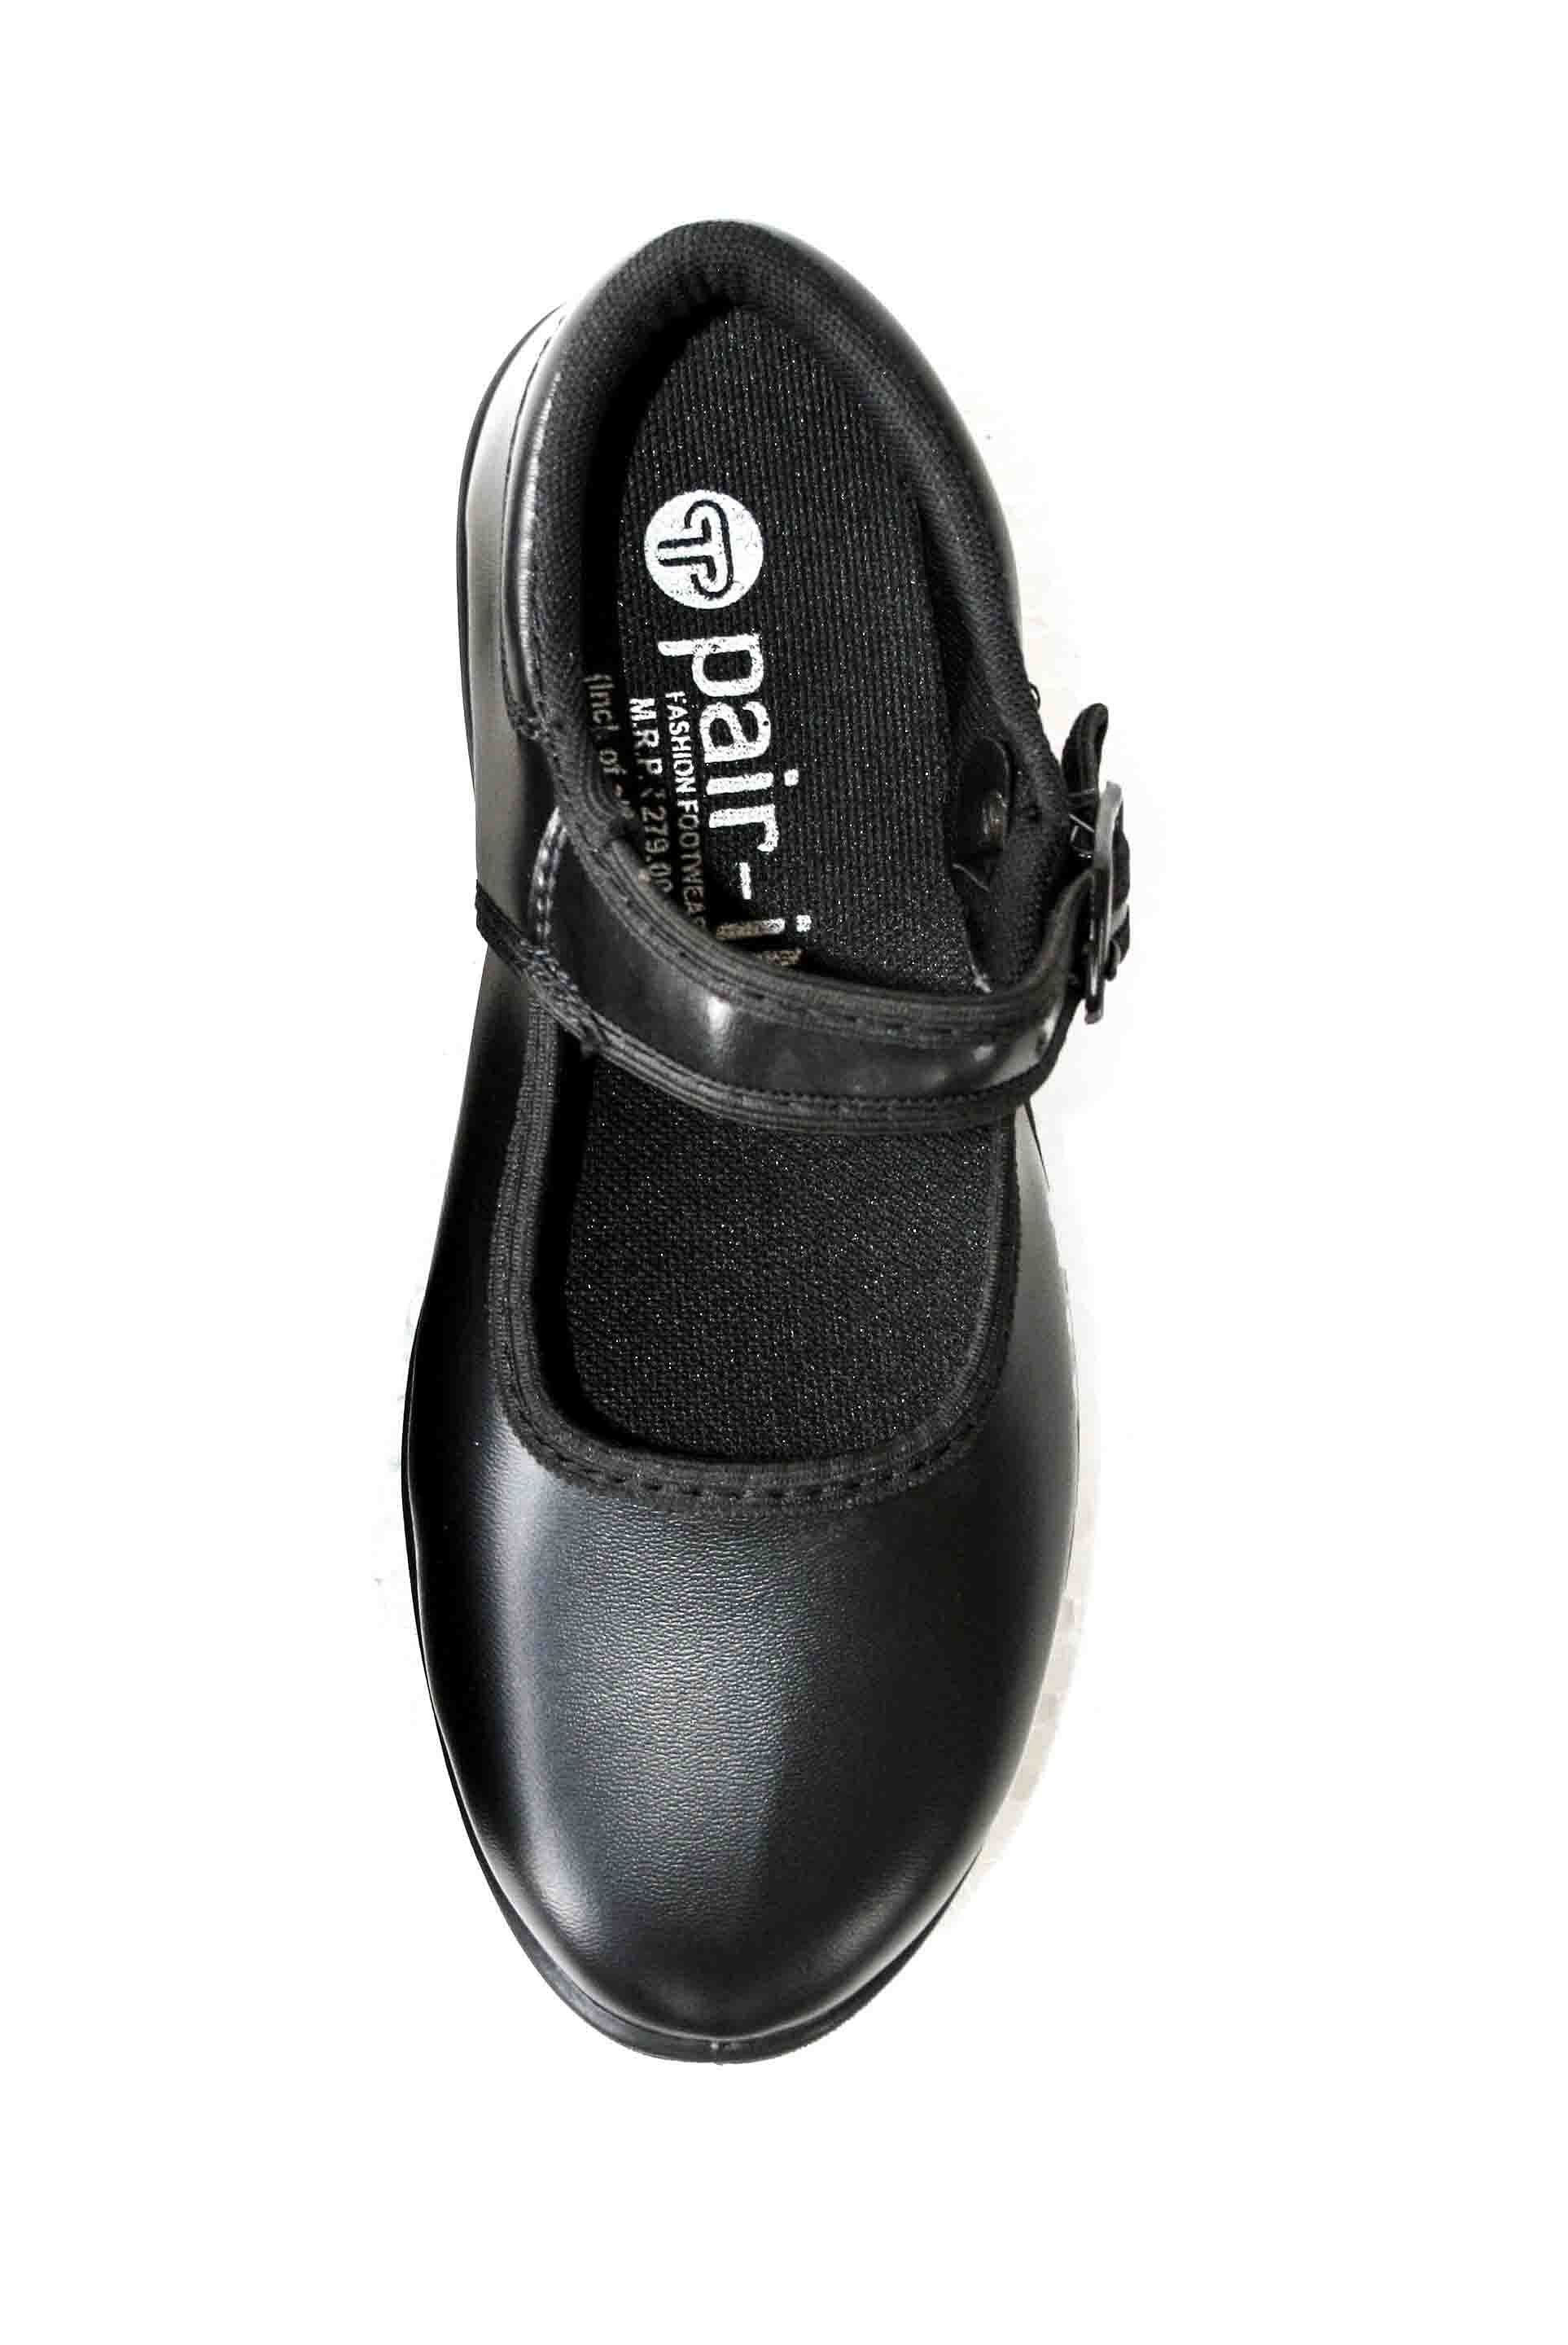 Pair-it Girls PVC School Shoe-Size- 11,12,13 - Color Black